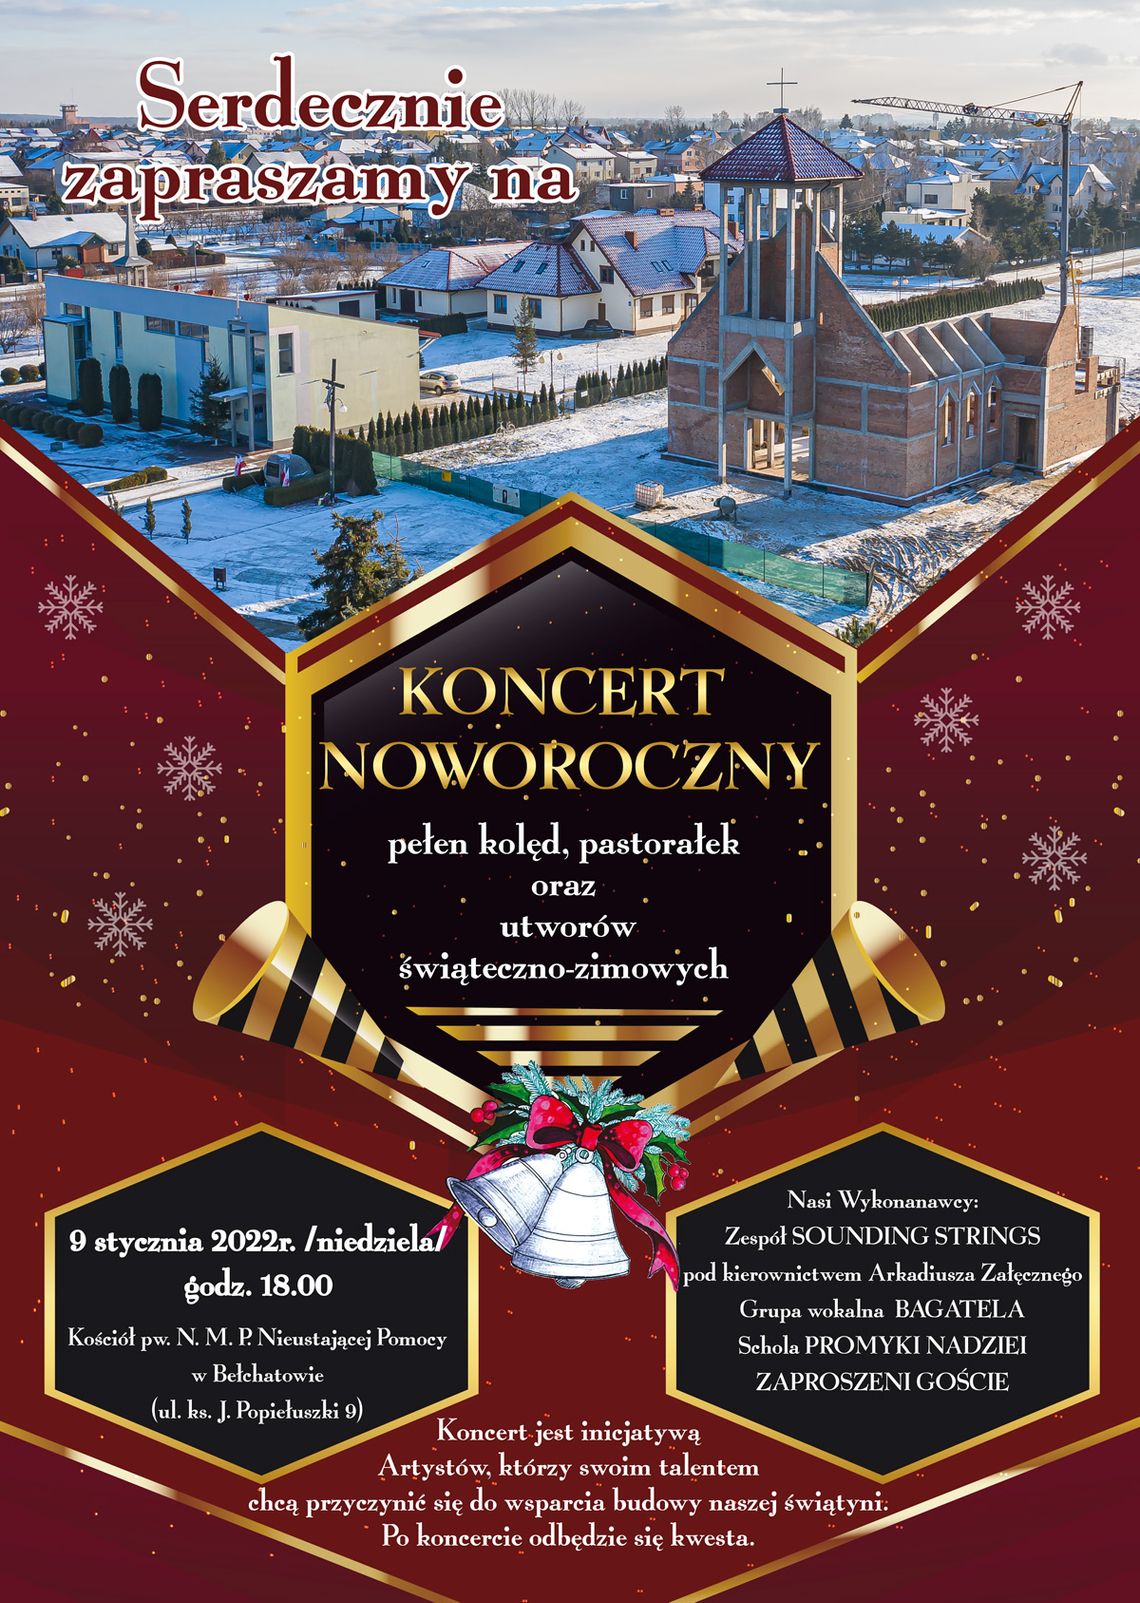 Zapraszamy na Koncert Noworoczny. W programie piękna muzyka w wykonaniu lokalnych artystów i zbiórka na szczytny cel.